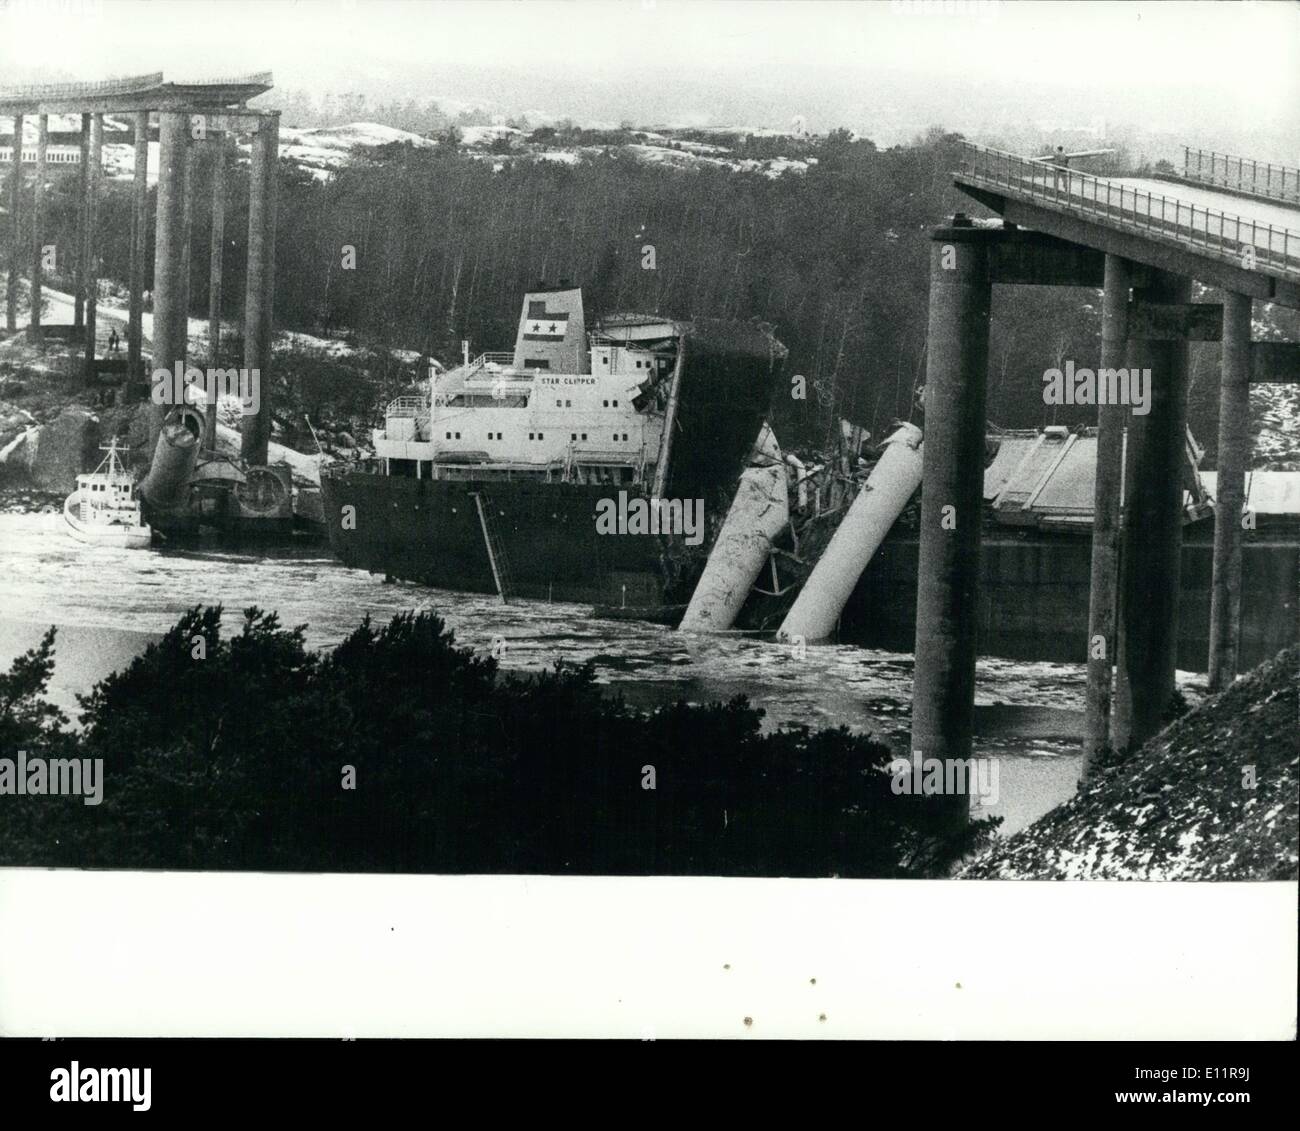 01 janvier, 1980 - 10 mourir comme navire pont hit en Suède : au moins 10 personnes sont mortes lors de la 27,000 tonne ''37'' a été dans une collision avec un pont routier près de Gothenburg Suède,. Le pont relié les îles de Tjorn et Orus, six voitures et deux camions a roulé sur le pont dans la mer au moment de la collision. La photo montre une partie de la structure du pont vu sur le pont du bateau après la collision/ Banque D'Images